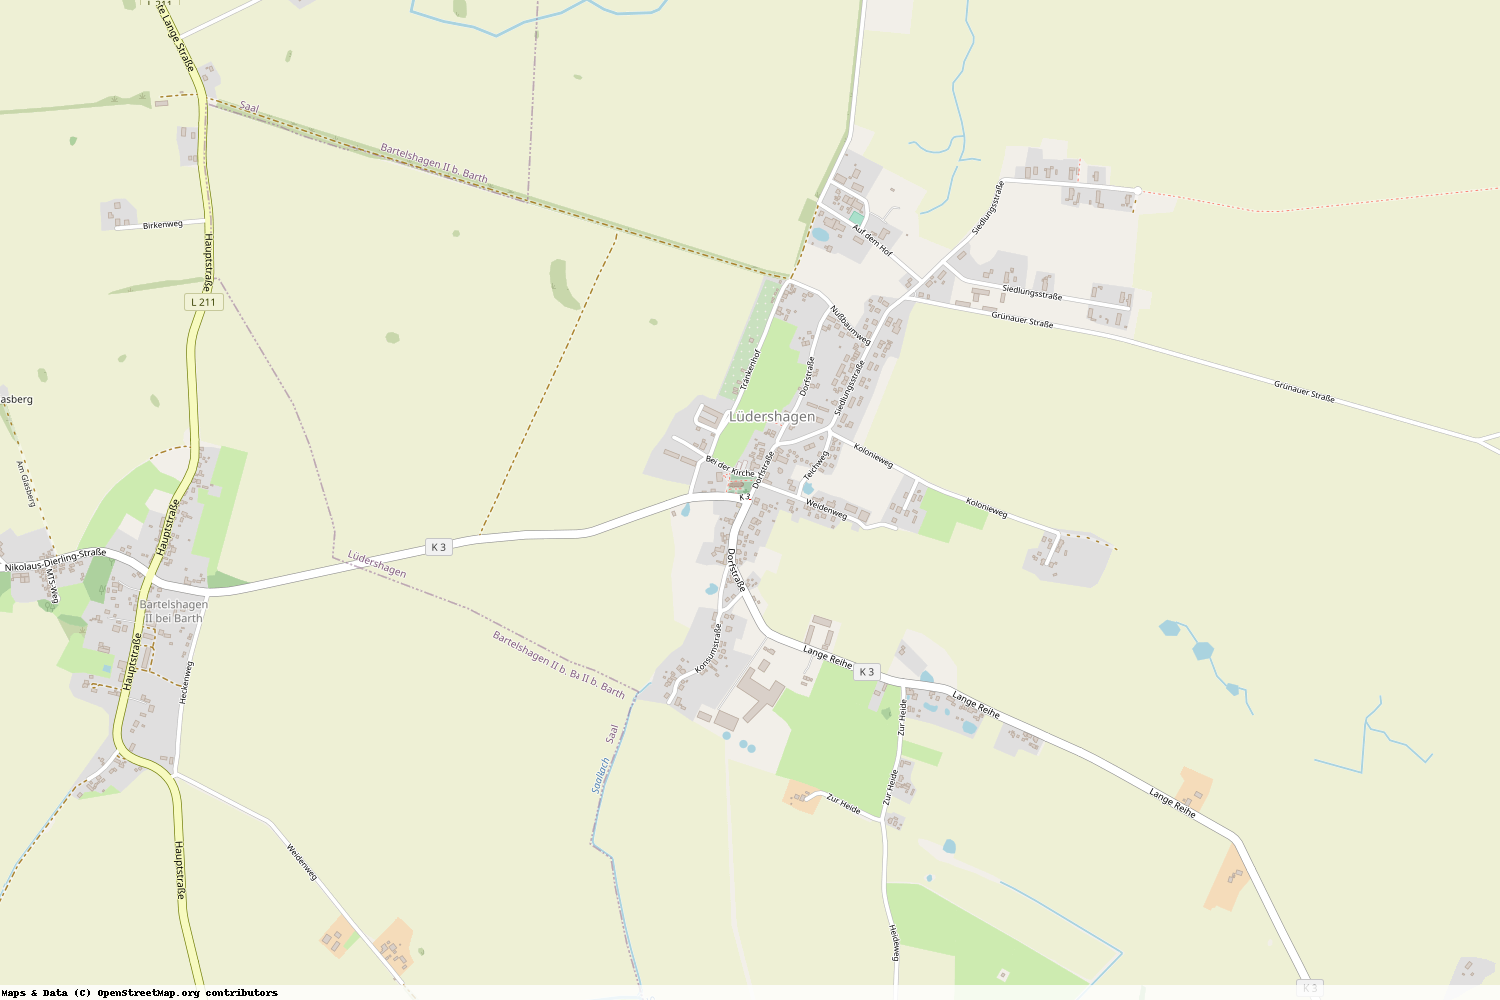 Ist gerade Stromausfall in Mecklenburg-Vorpommern - Vorpommern-Rügen - Lüdershagen?